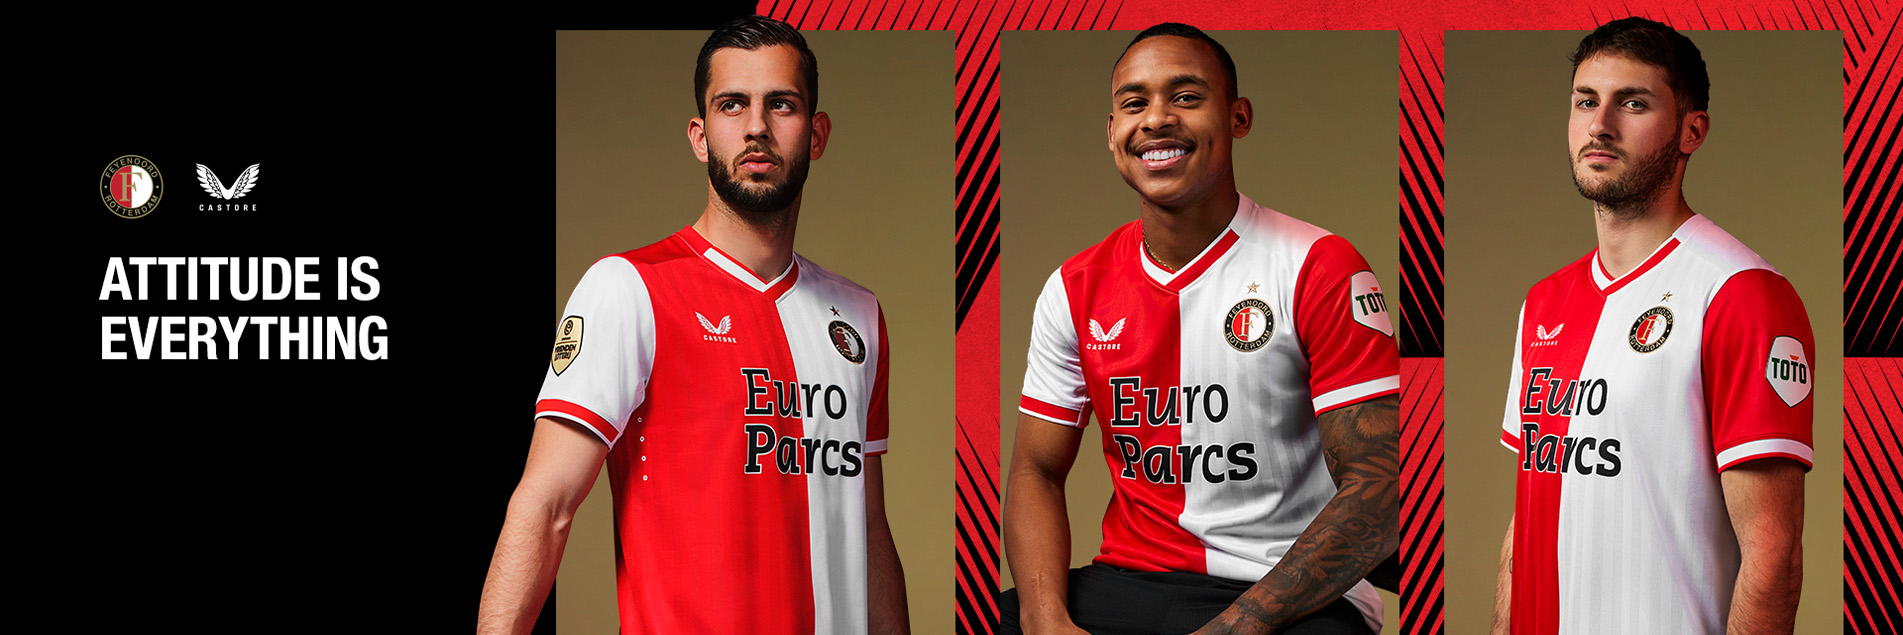 Feyenoord x Castore | Ontdek het nieuwe thuisshirt